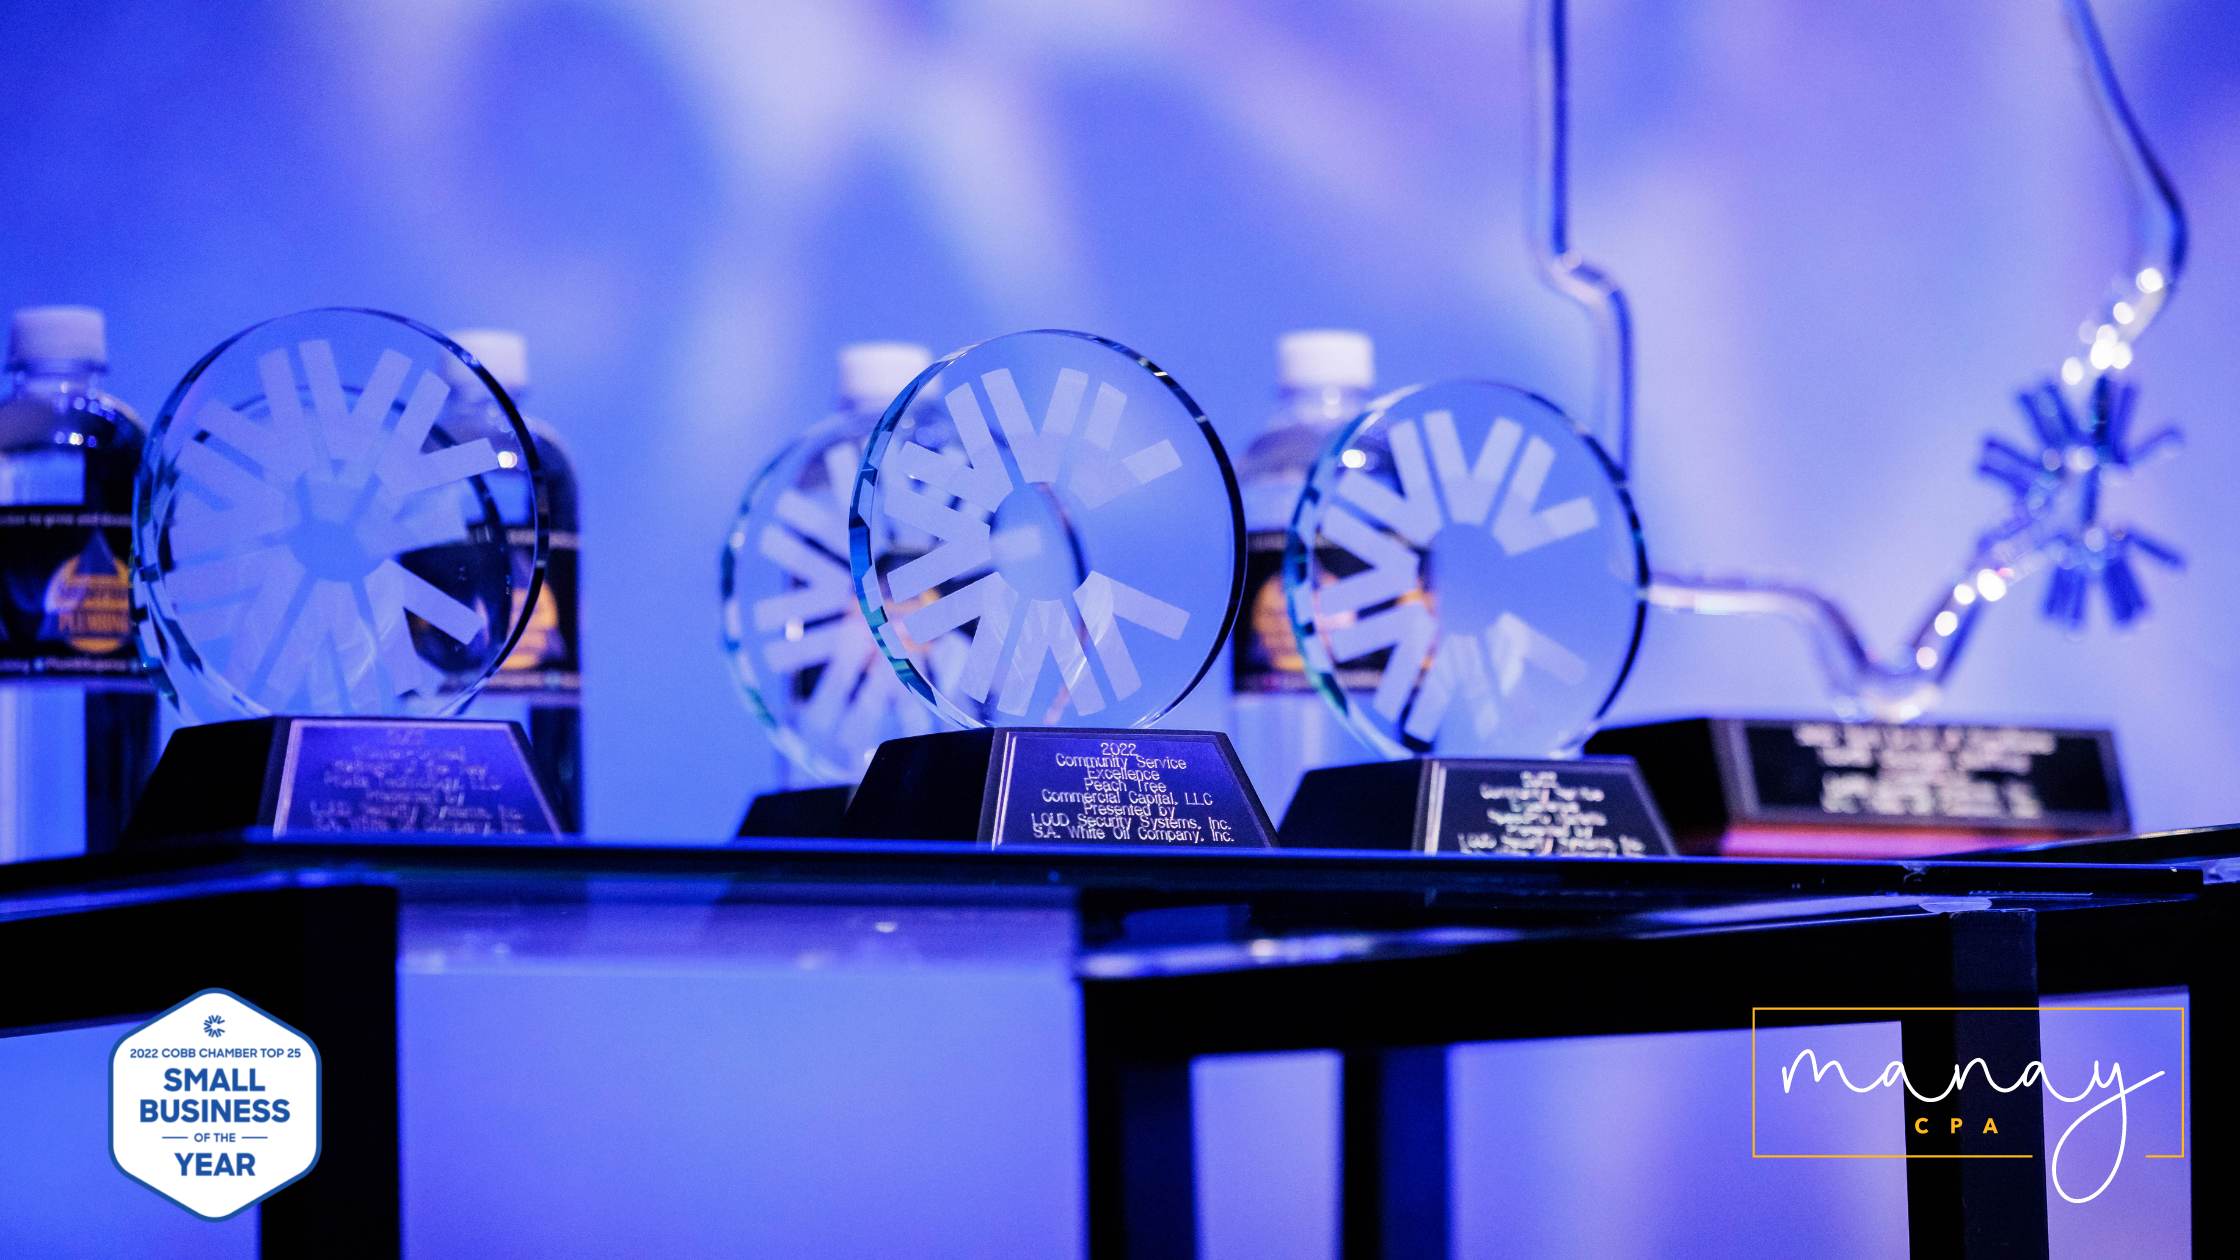 Manay CPA Üçüncü Kez “Yılın En İyi 25 Kobi Ödülü'ne Layık Görüldü